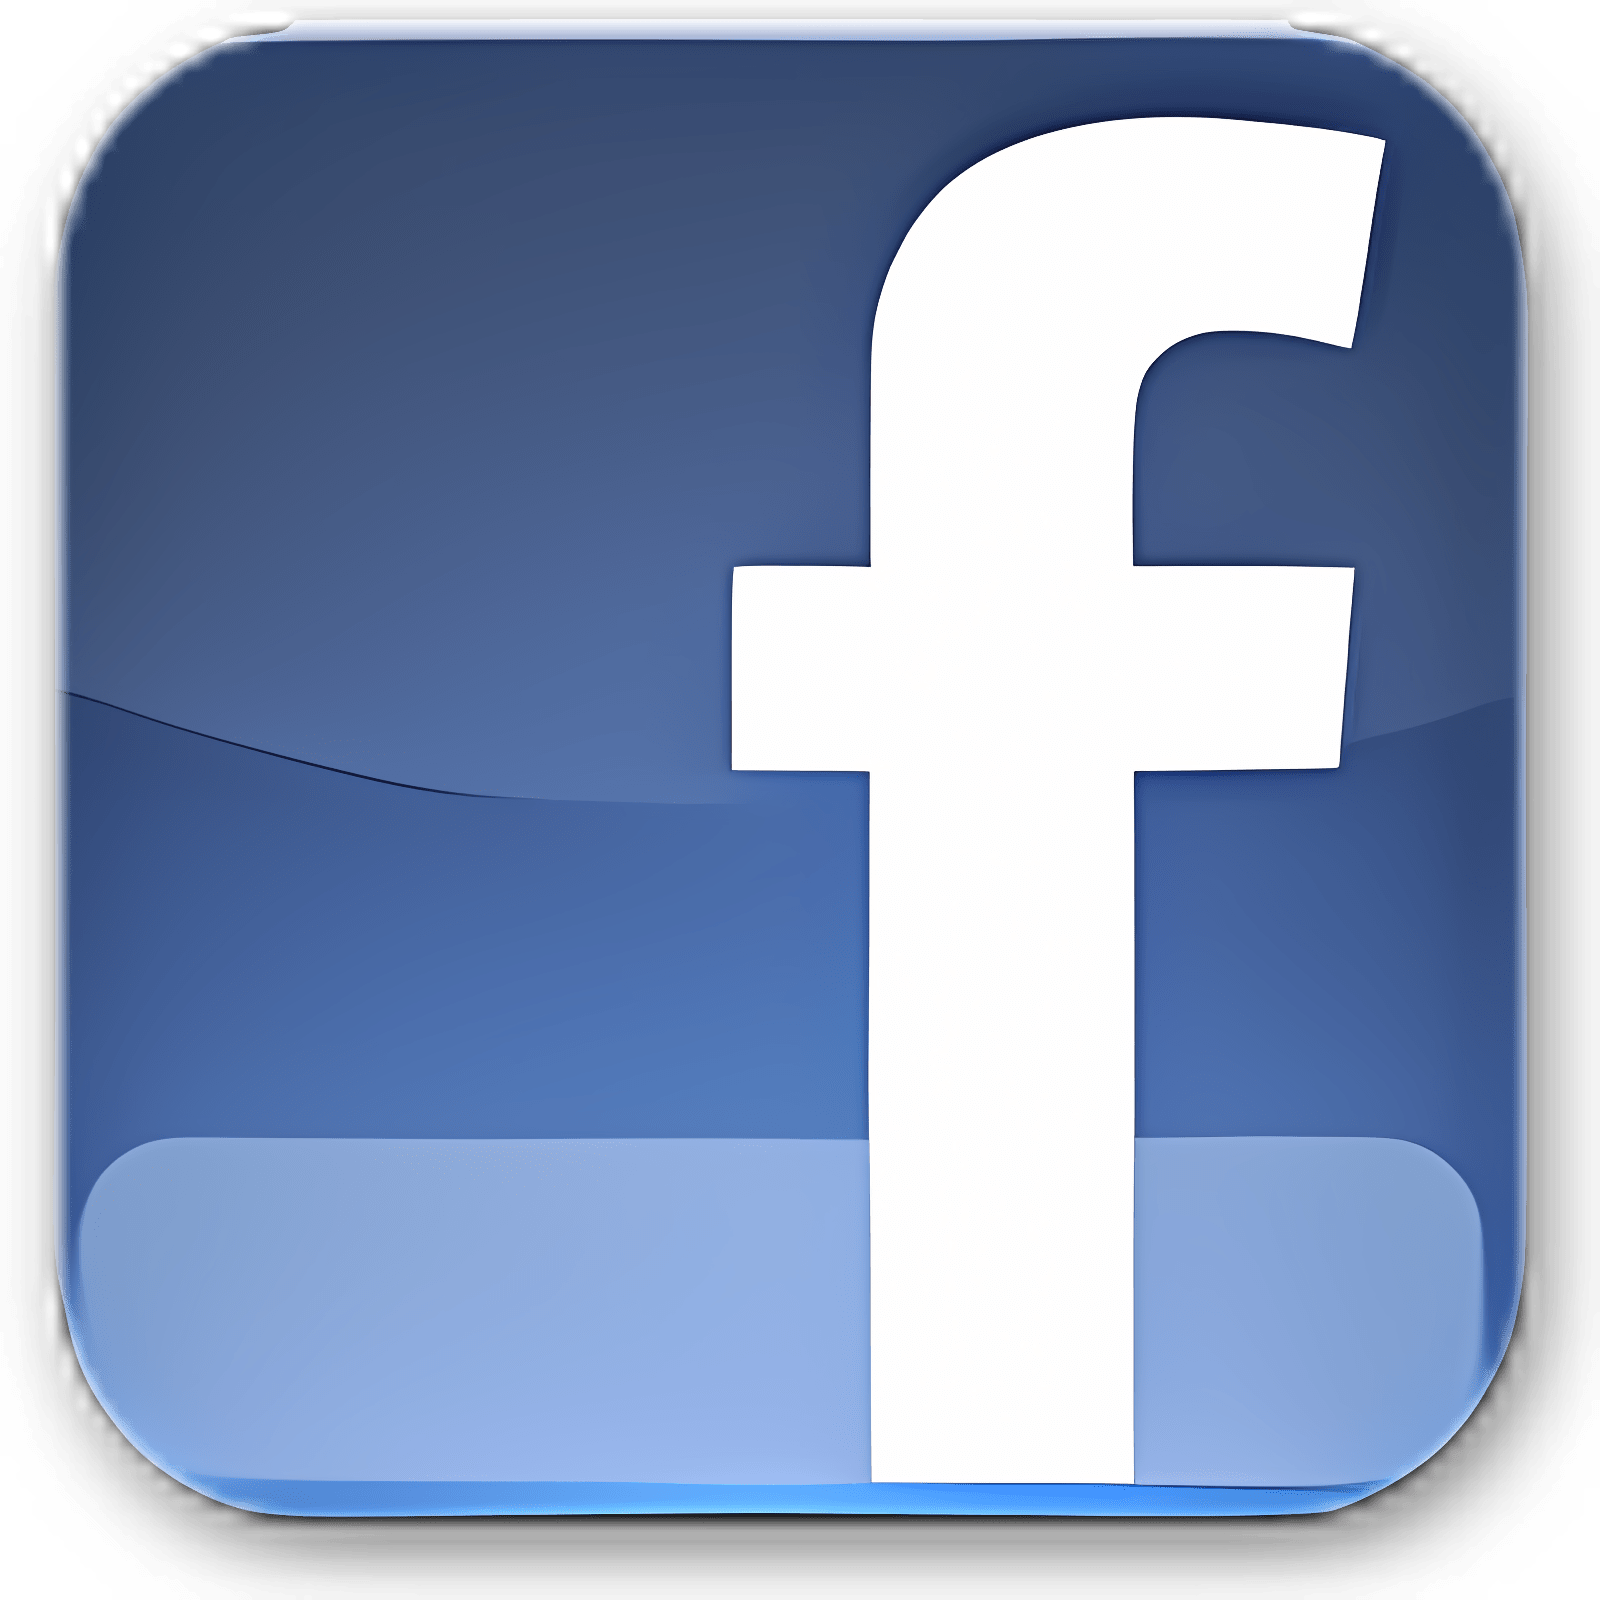 下载 Facebook Notifications 安装 最新 App 下载程序